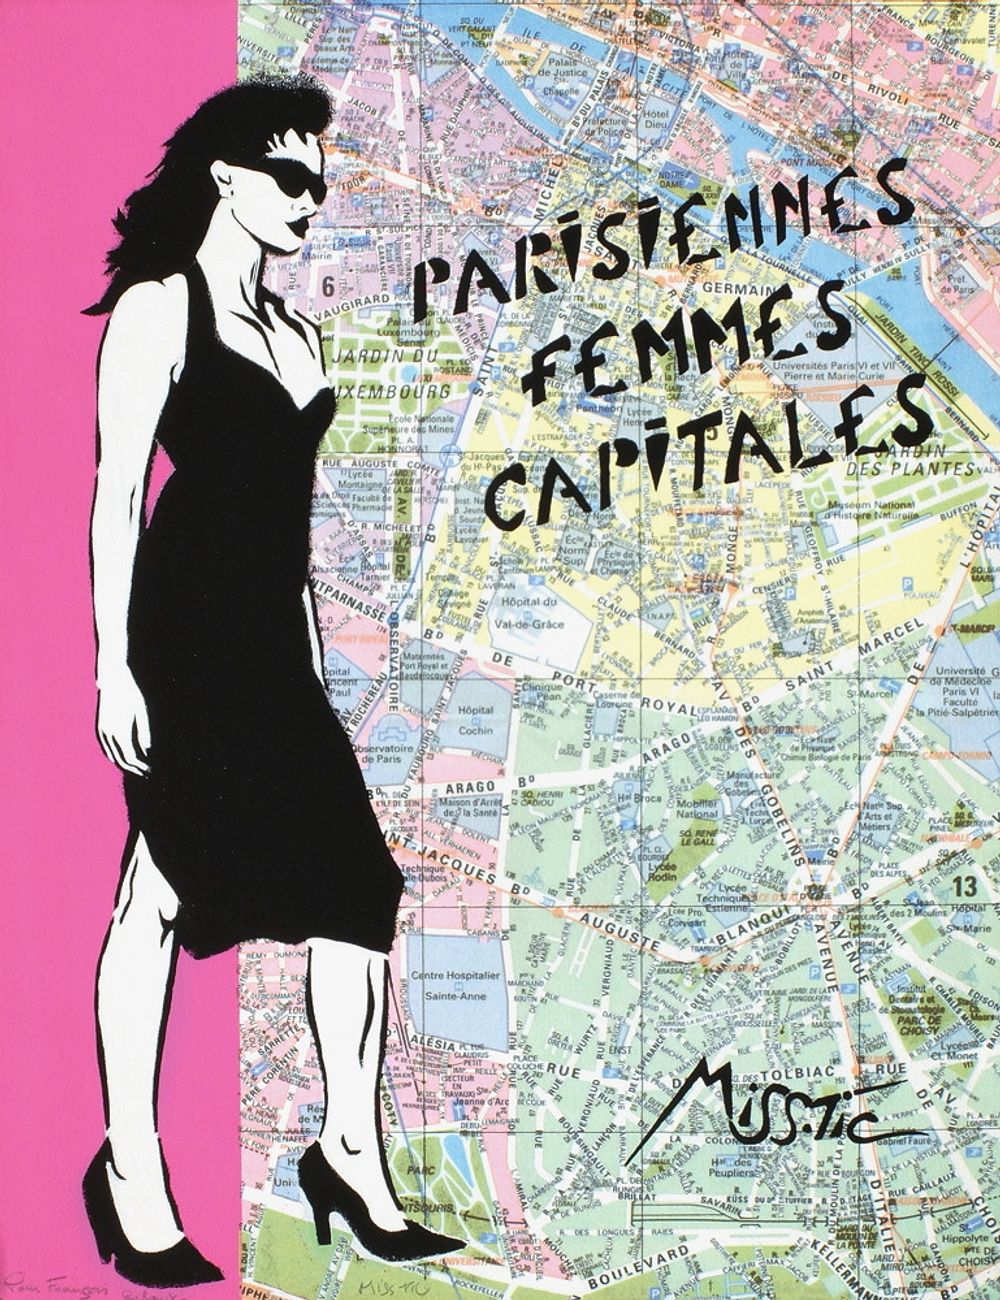 Parisiennes femmes capitales